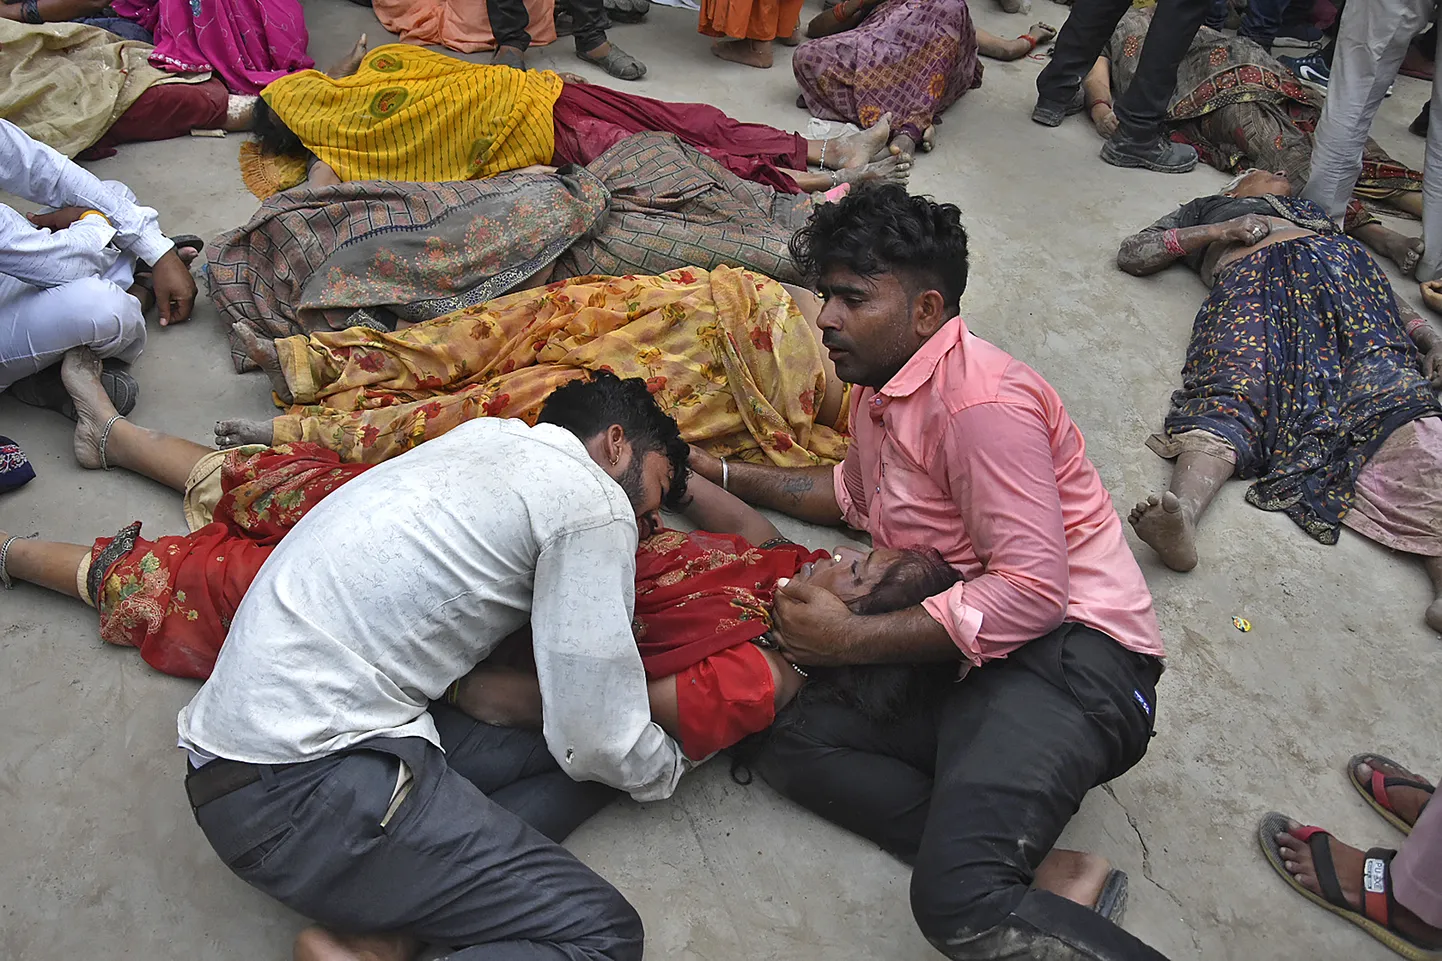 Põhja-Indias sai hindu usupühade rüseluses surma vähemalt 107 inimest.